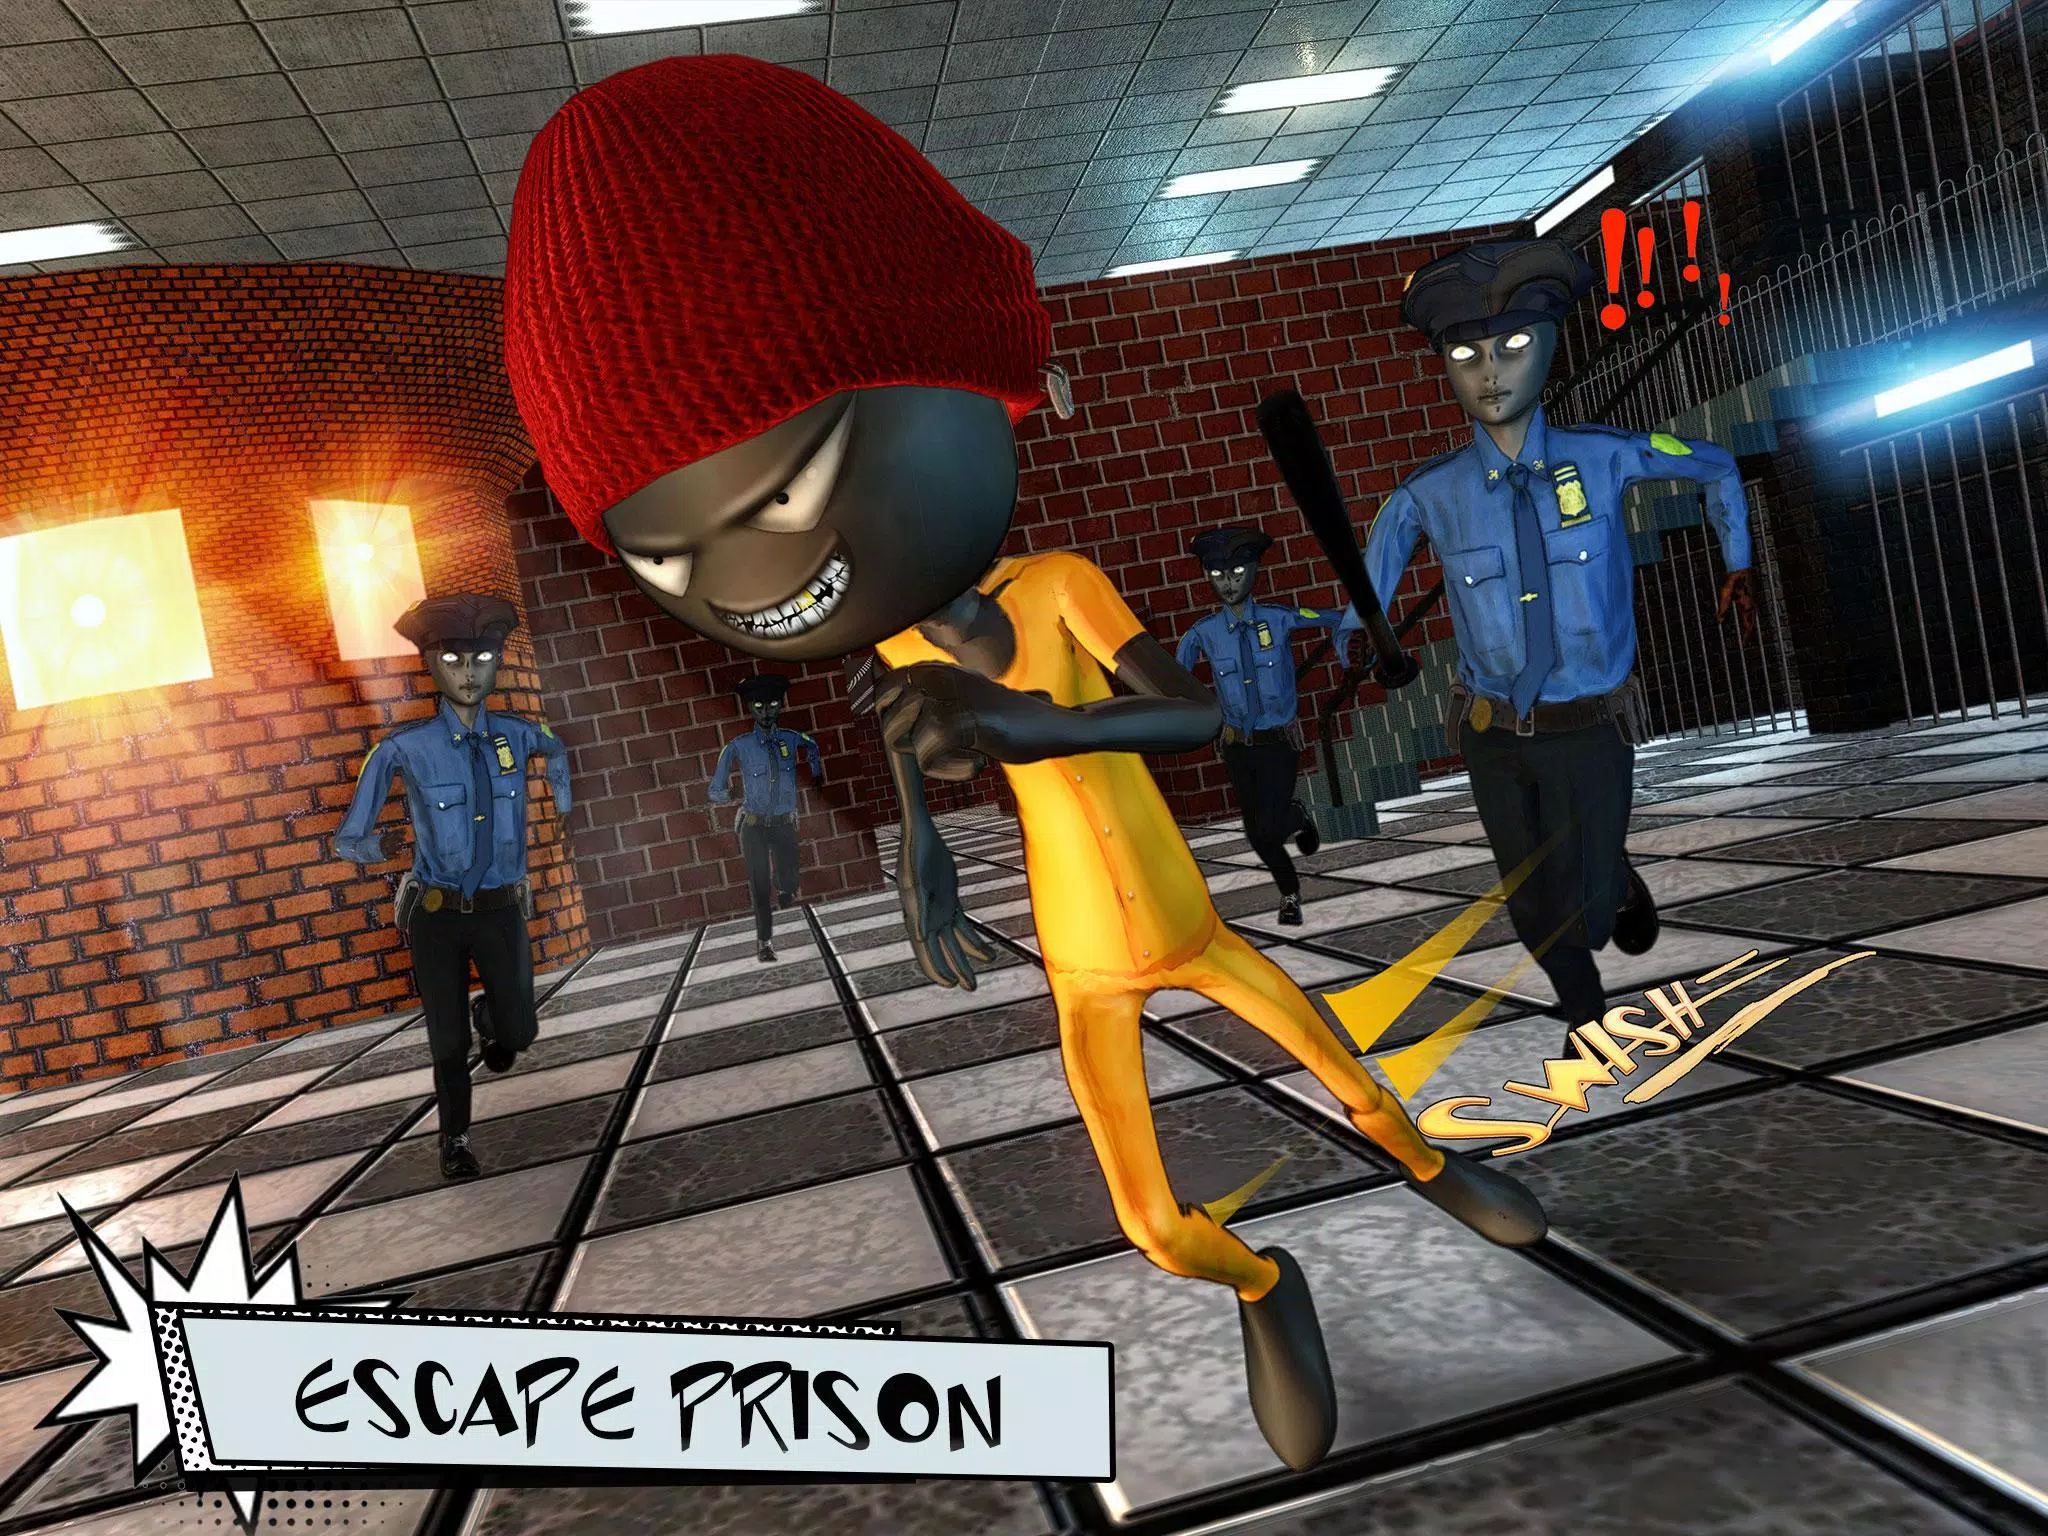 Stickman Prison Escape - Jail Breakout Free Download